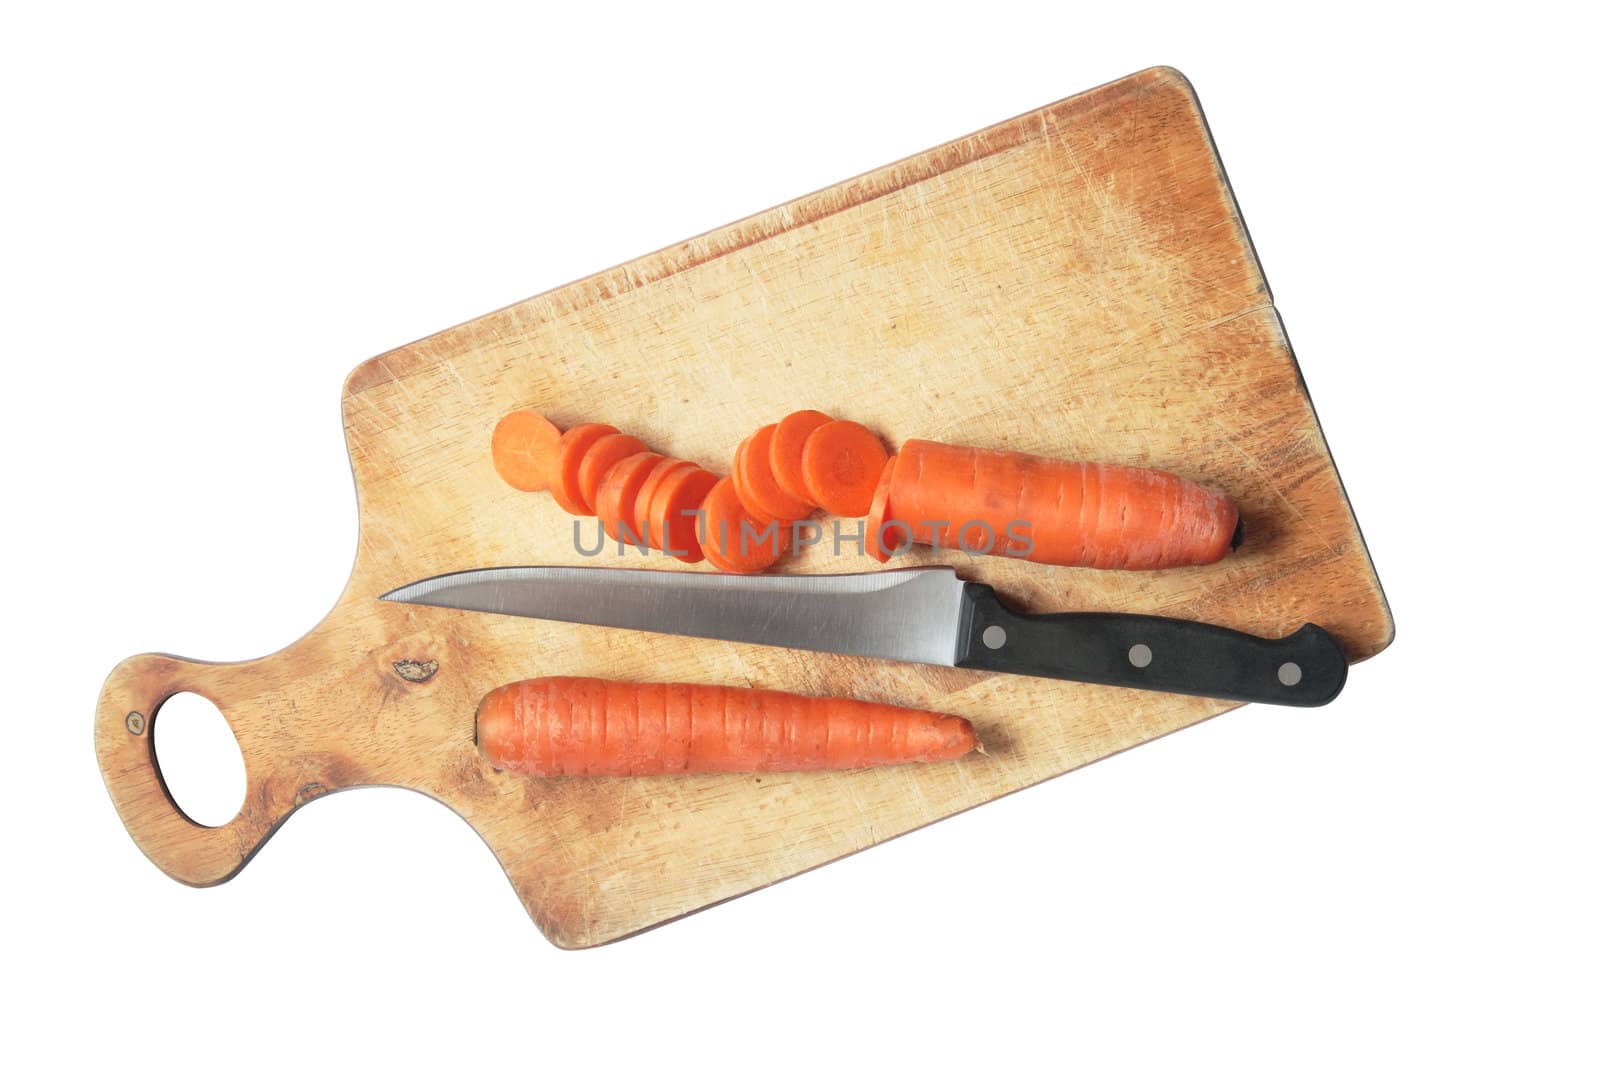 Sliced Carrots by kvkirillov